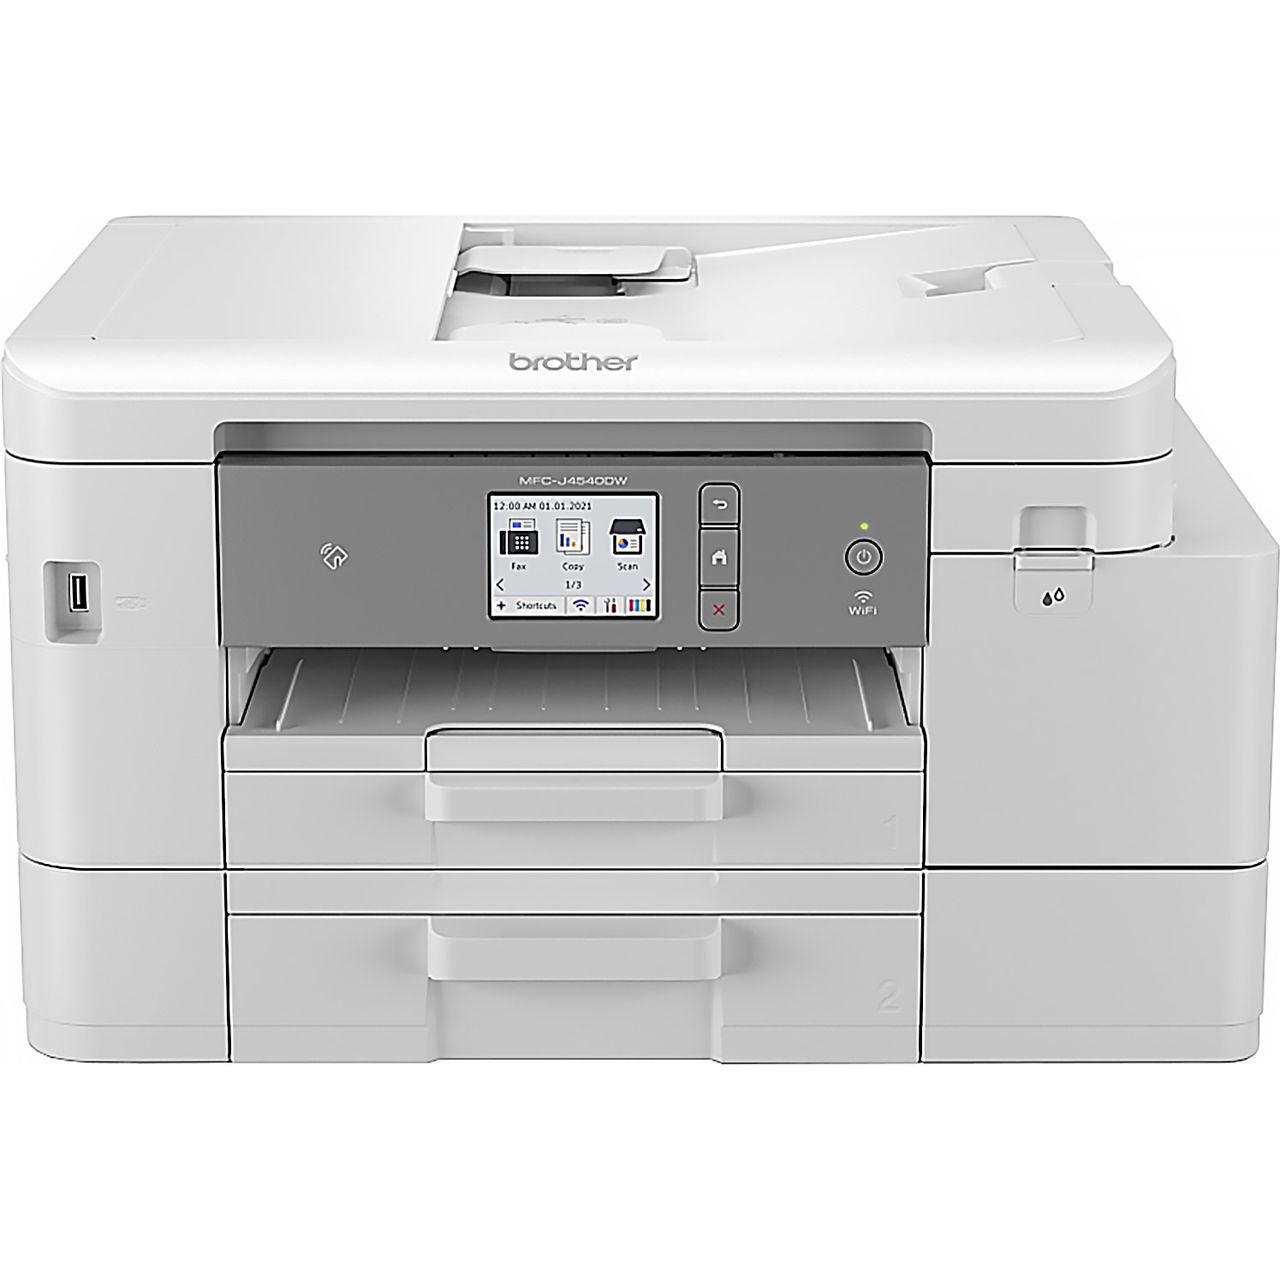 Brother MFC-J4540DWXL Inkjet Printer - White